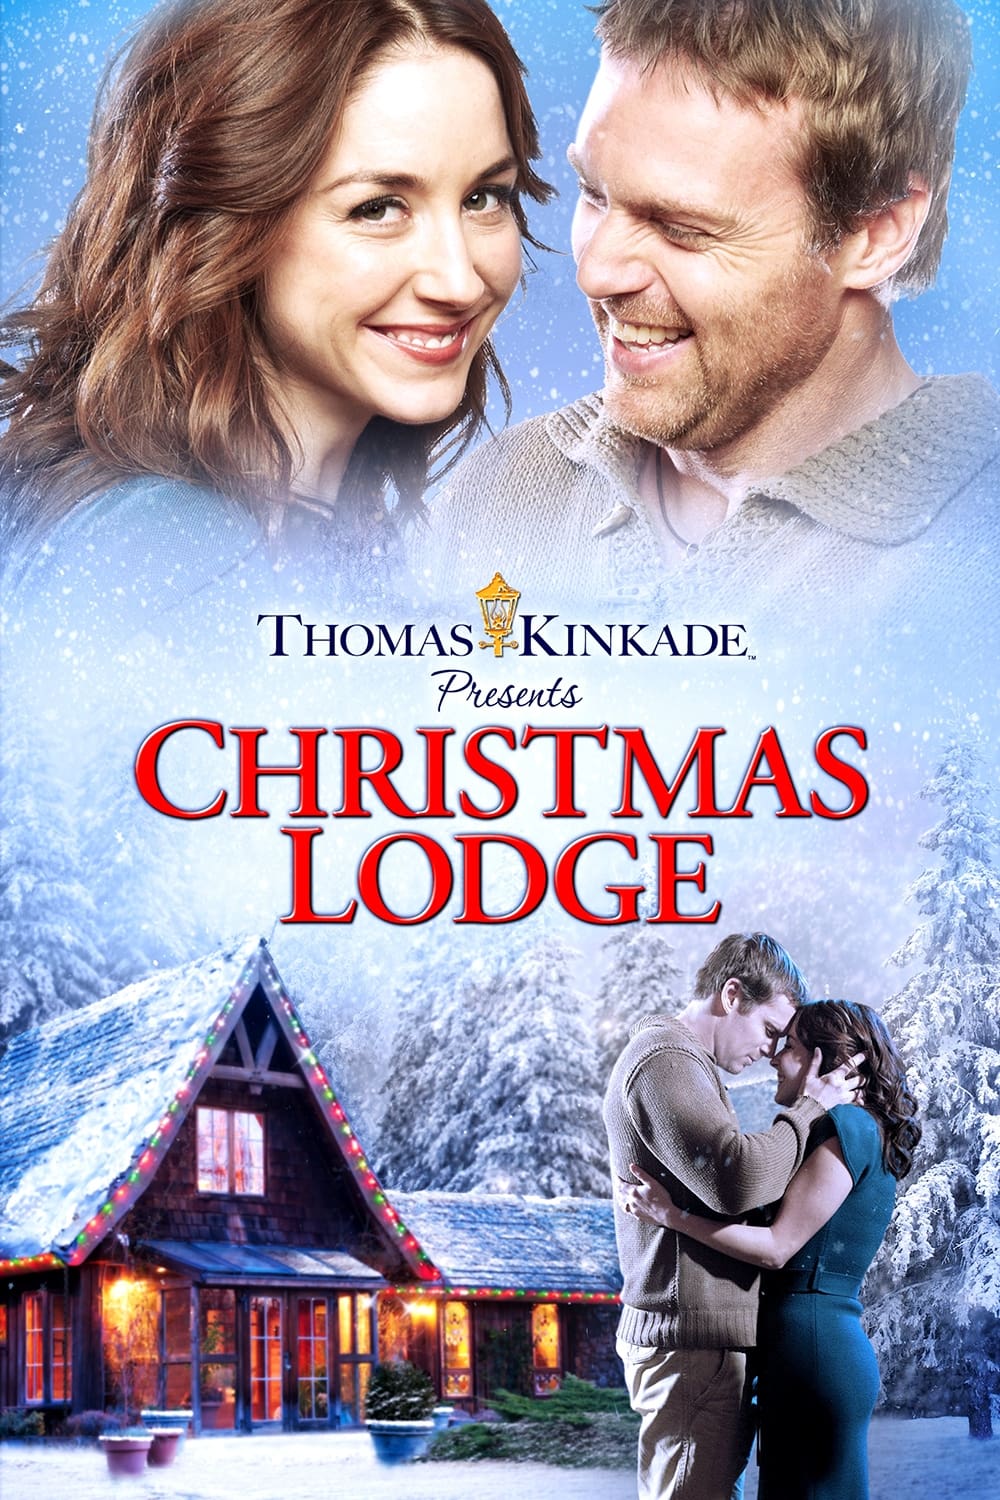 Christmas Lodge (2011)